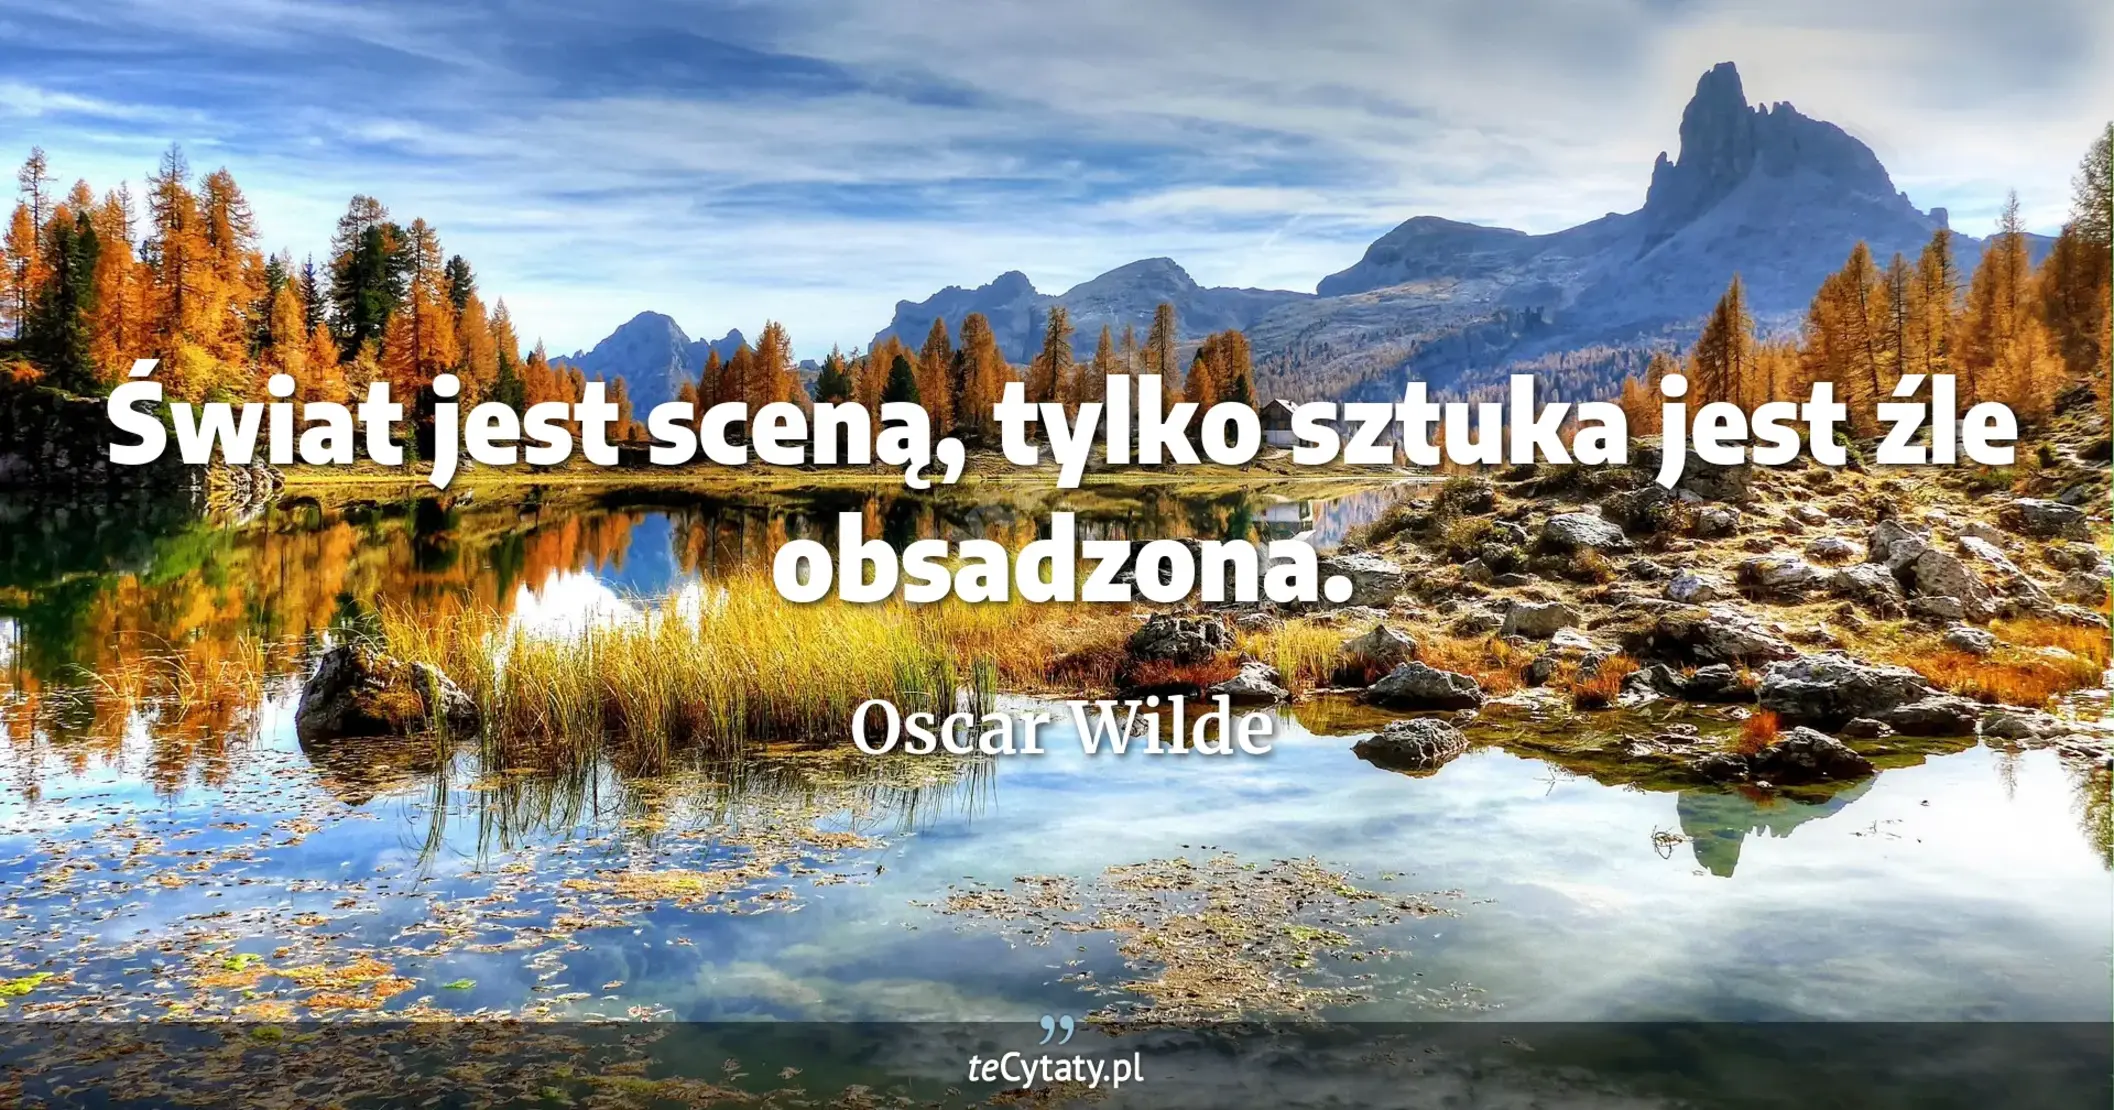 Świat jest sceną, tylko sztuka jest źle obsadzona. - Oscar Wilde